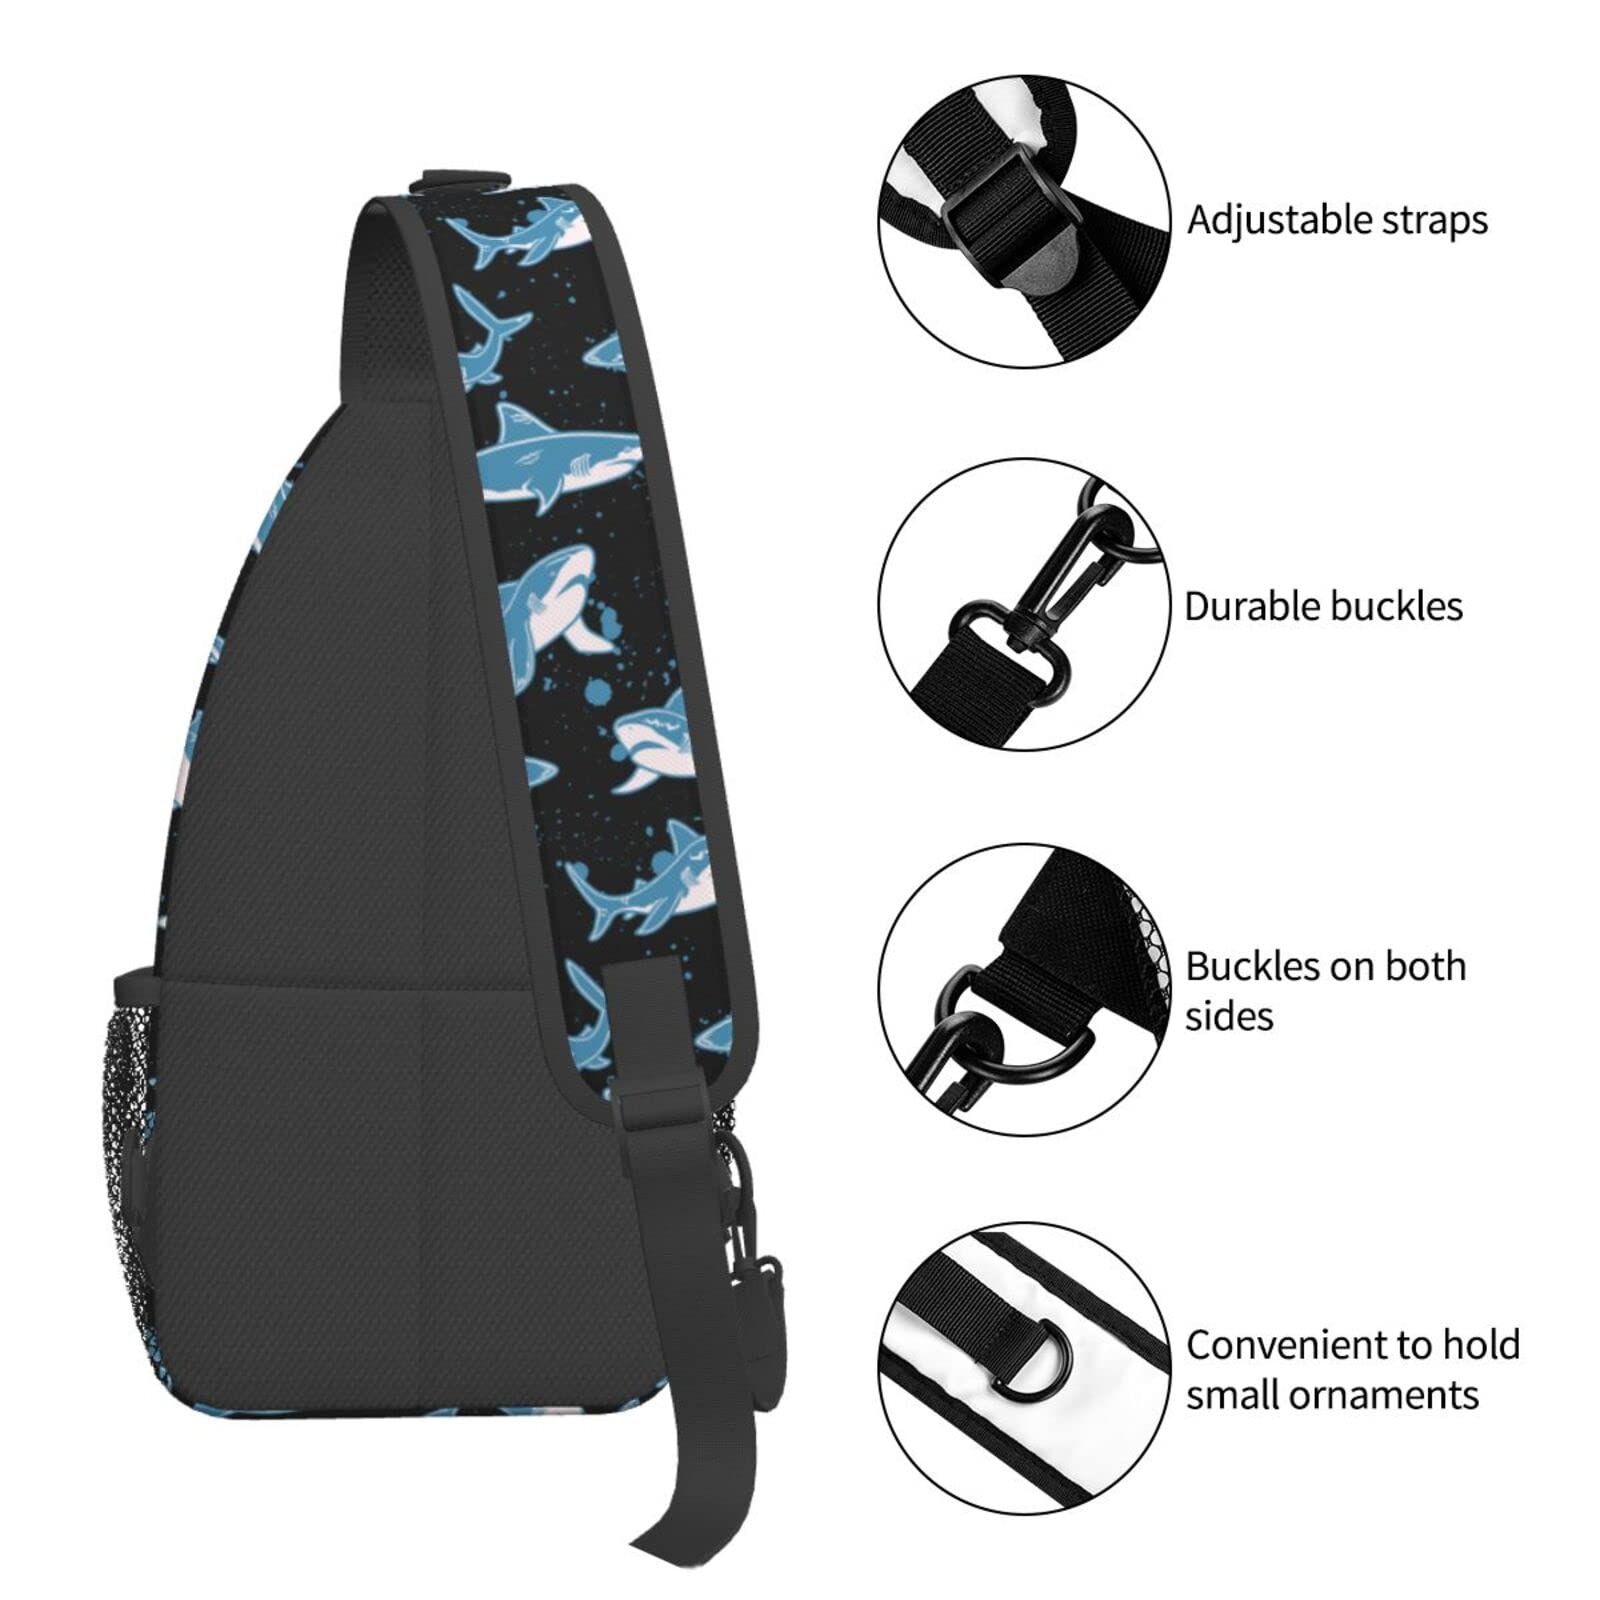 Yrebyou Shark Sling Bag for Women Men Crossbody Strap Backpack Lightweight Waterproof Travel Hiking Daypack Shoulder Bag